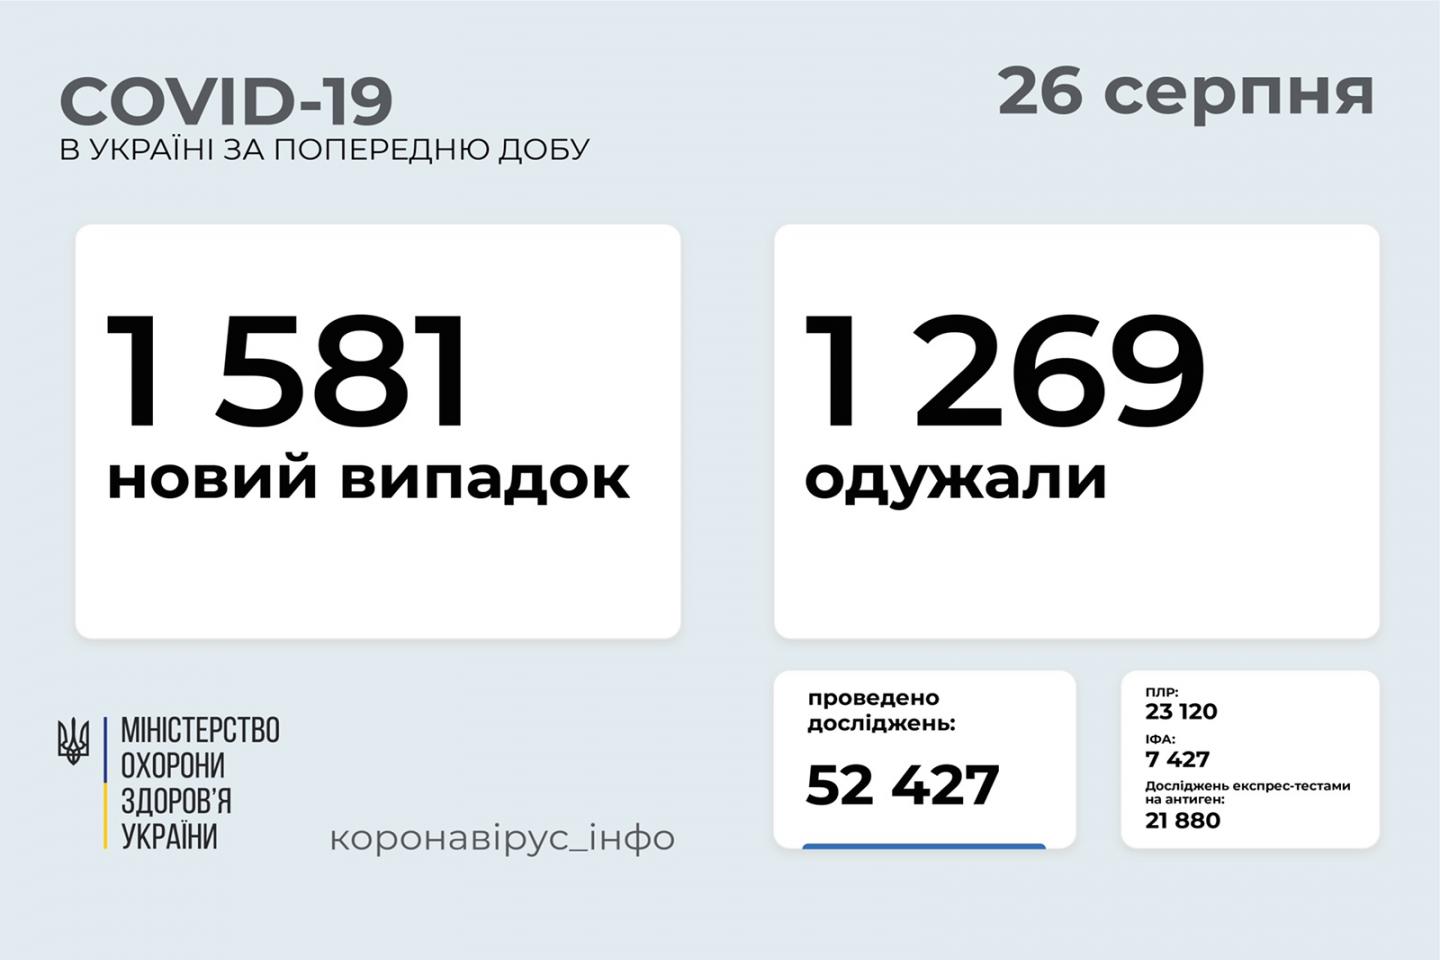 http://dunrada.gov.ua/uploadfile/archive_news/2021/08/26/2021-08-26_5893/images/images-72900.jpg